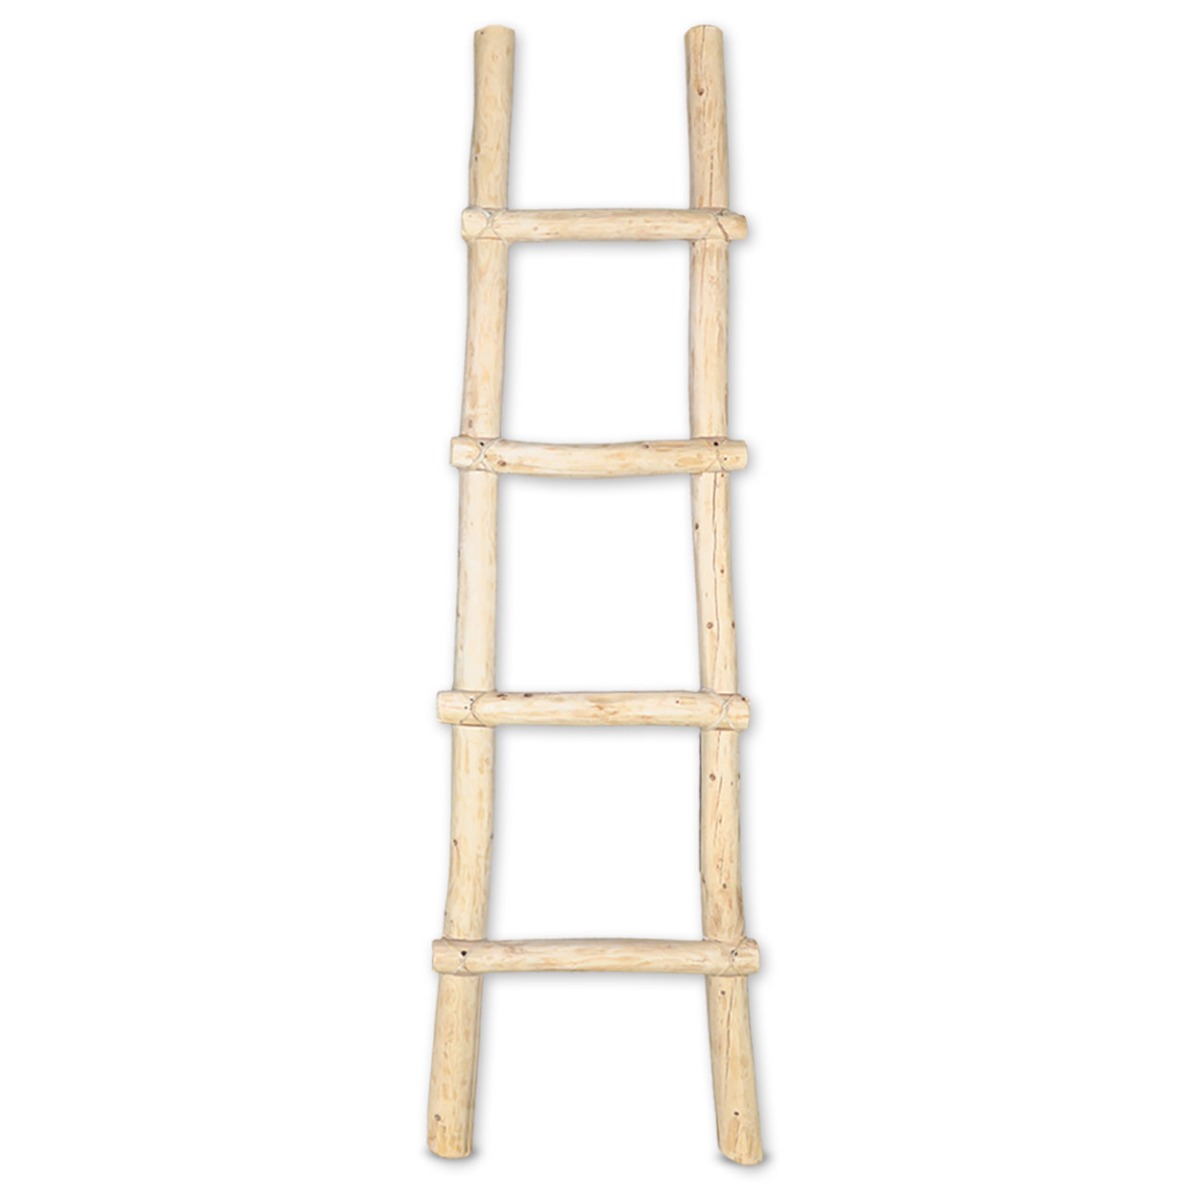 460372 - 6ft Decorative Wooden Kiva Log Ladder